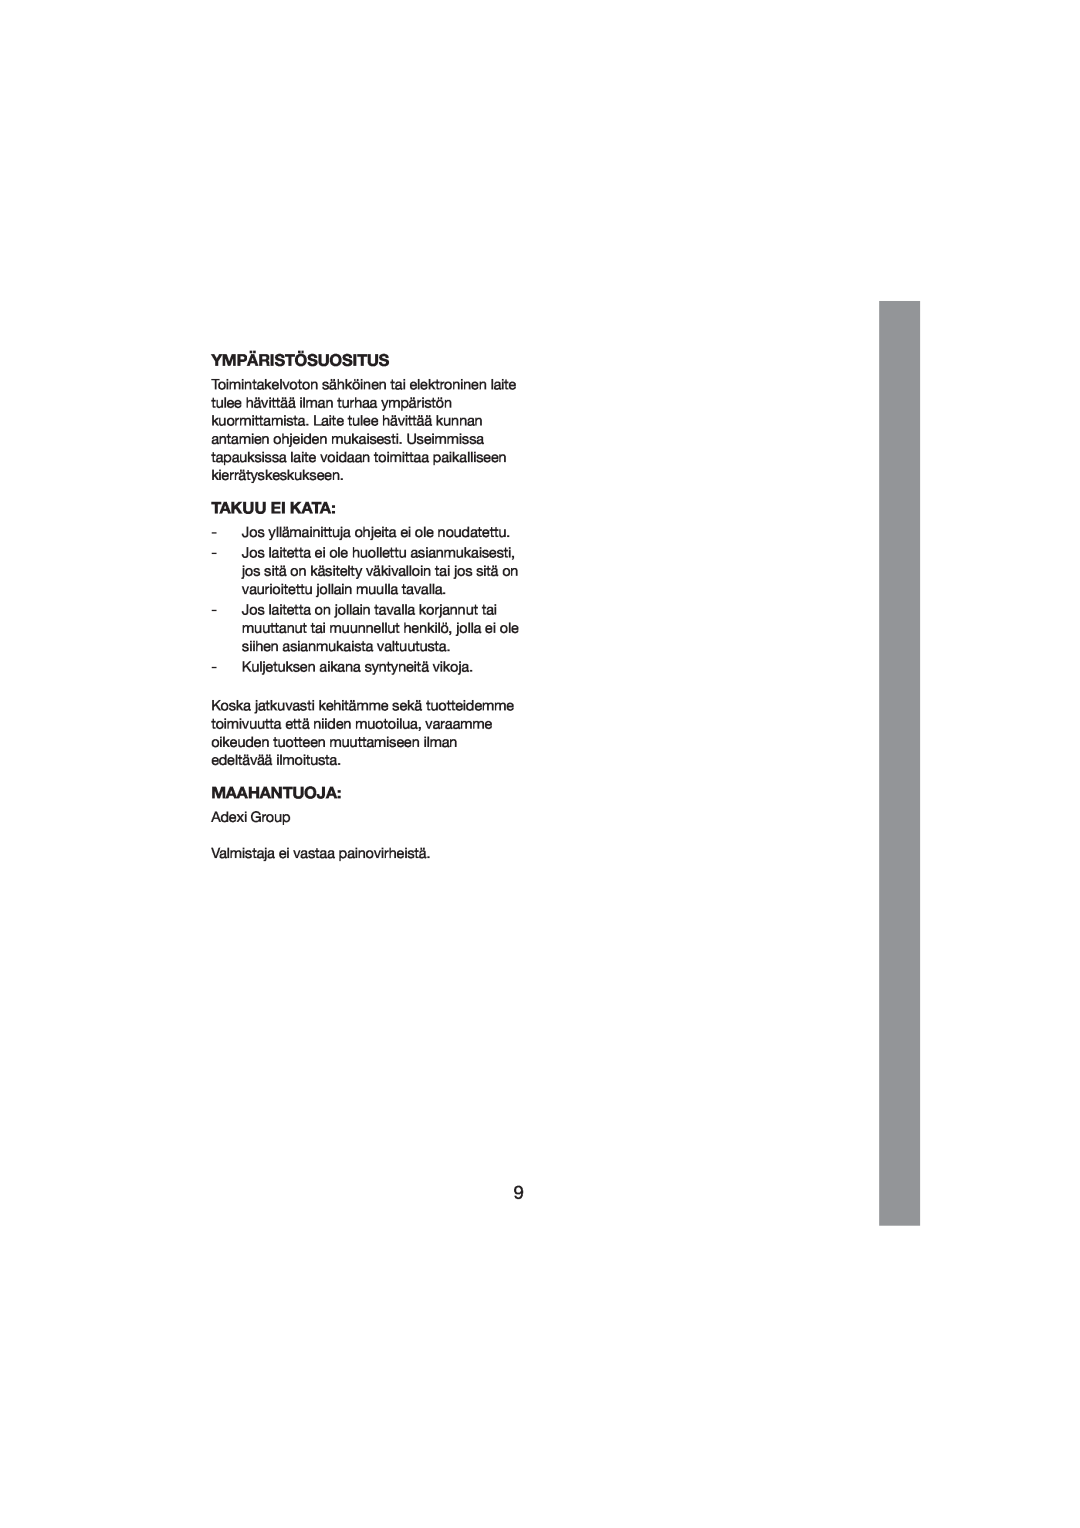 Melissa 245-024 manual Ympäristösuositus, Takuu Ei Kata, Maahantuoja 